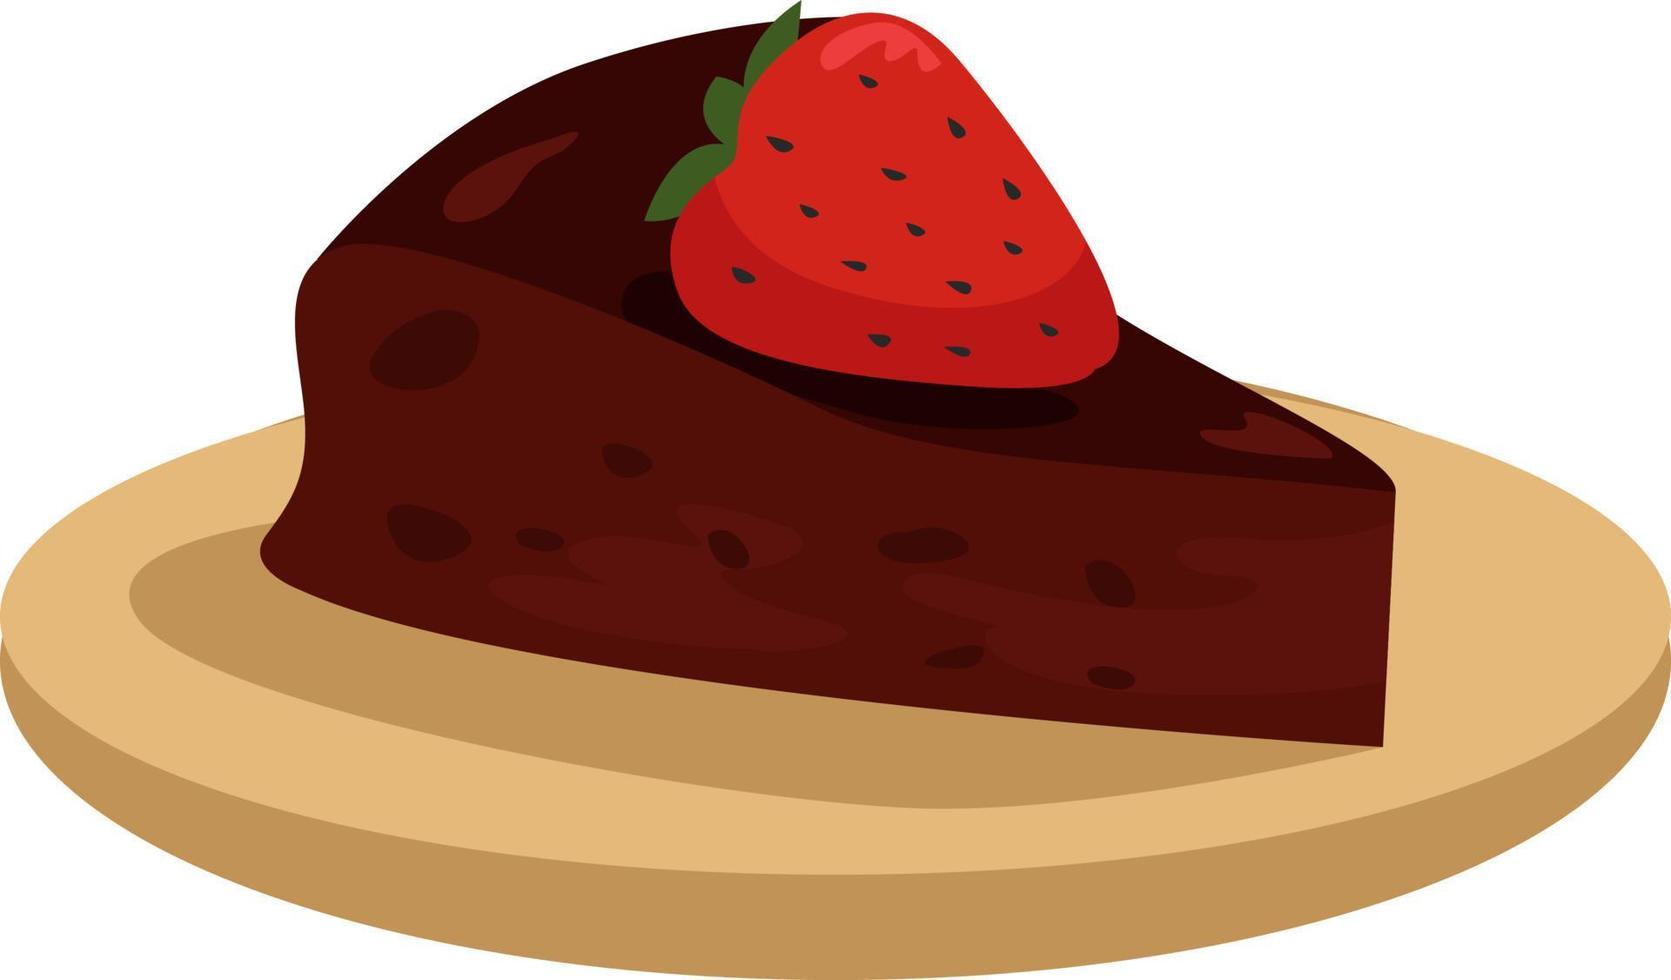 Stück Schokoladenkuchen mit Erdbeere, Illustration, Vektor auf weißem Hintergrund.